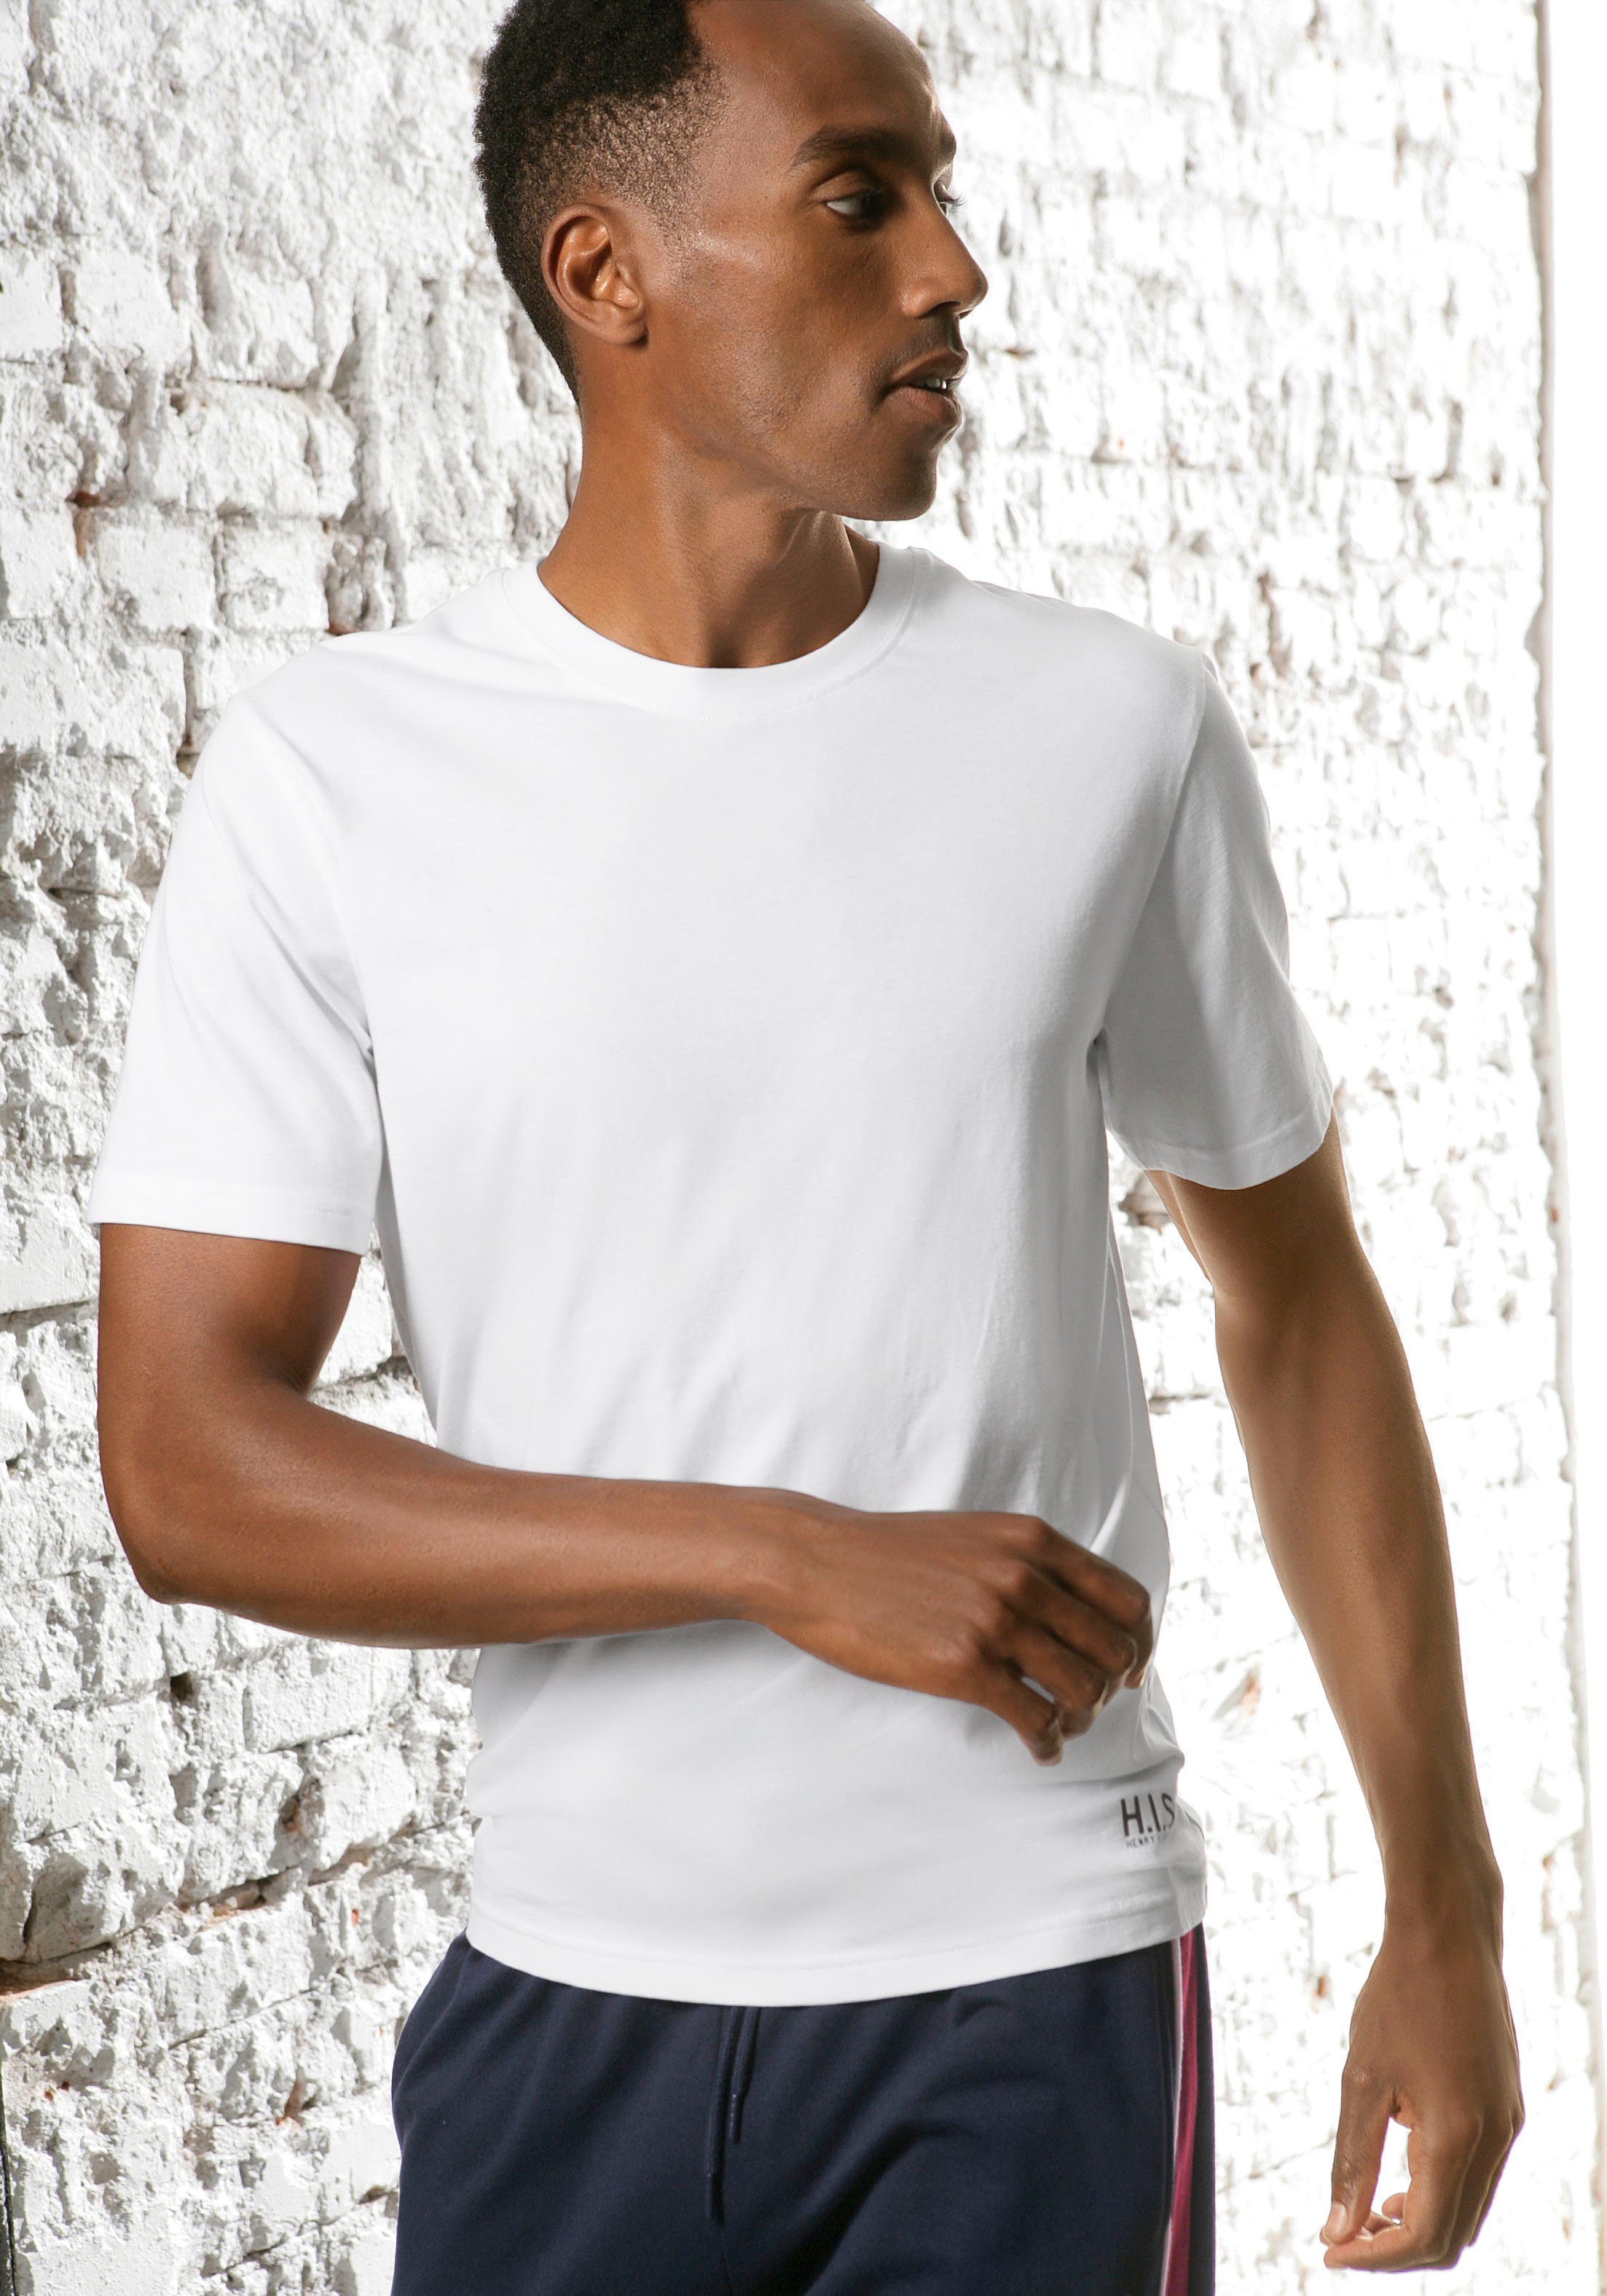 H.I.S bordeaux, Kurzarmshirt perfekt (3er-Pack) als schwarz, Unterziehshirt weiß